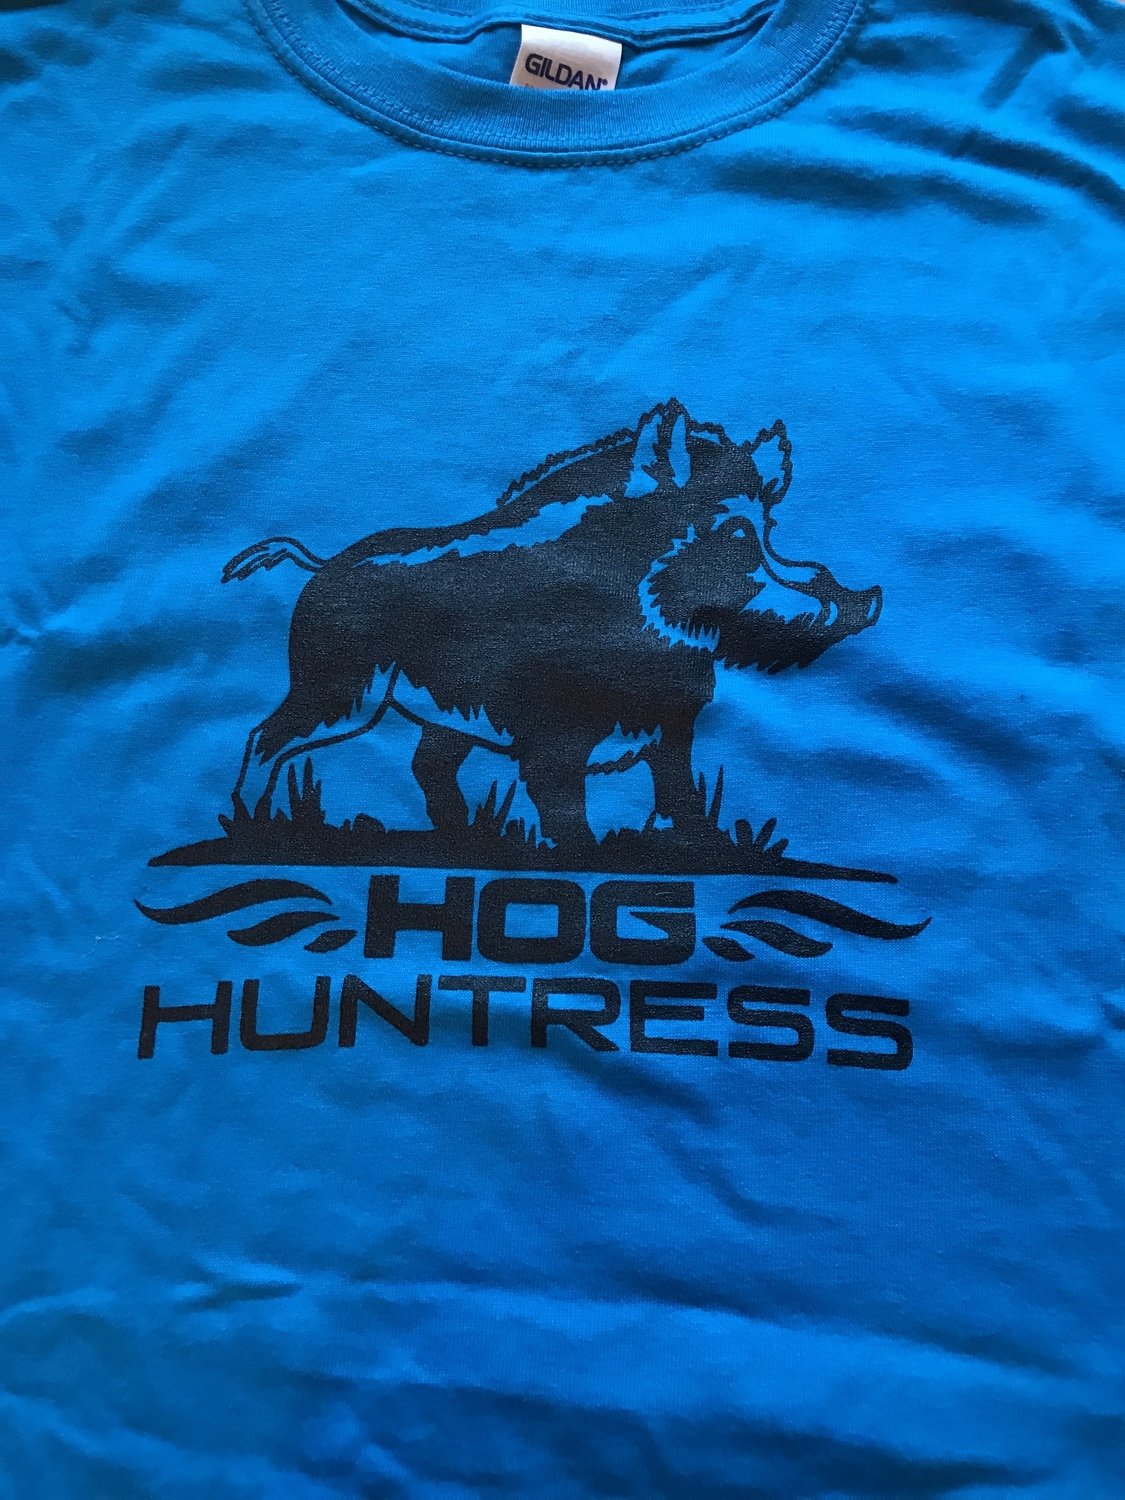 Hog Huntress